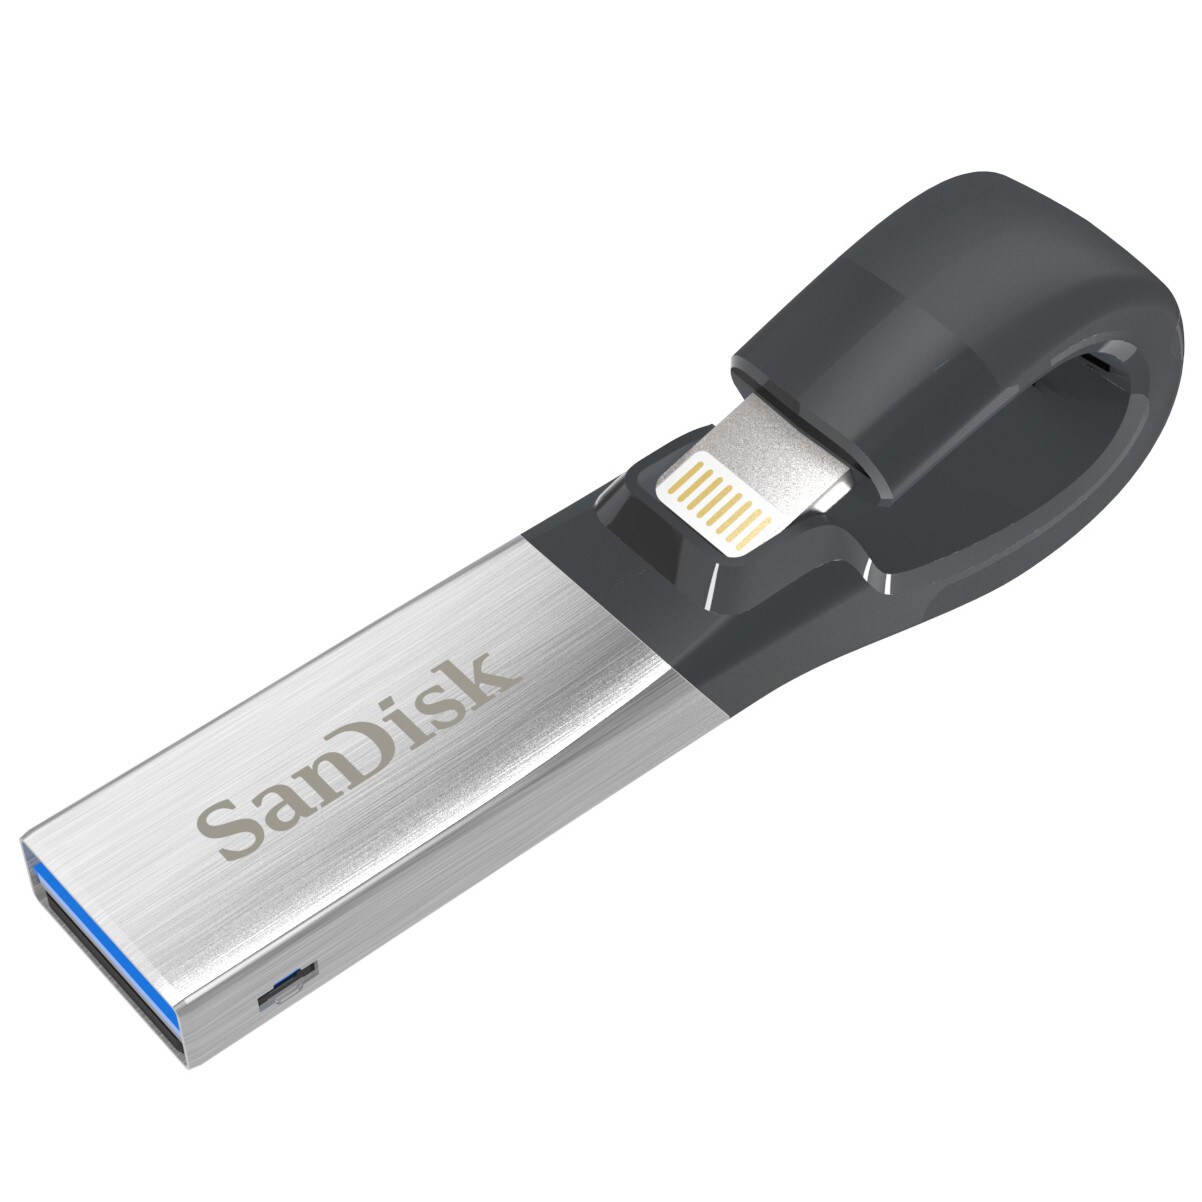 SanDisk iXpand 2 lagringsenhed til iPad/iPhone 16 GB | Elgiganten